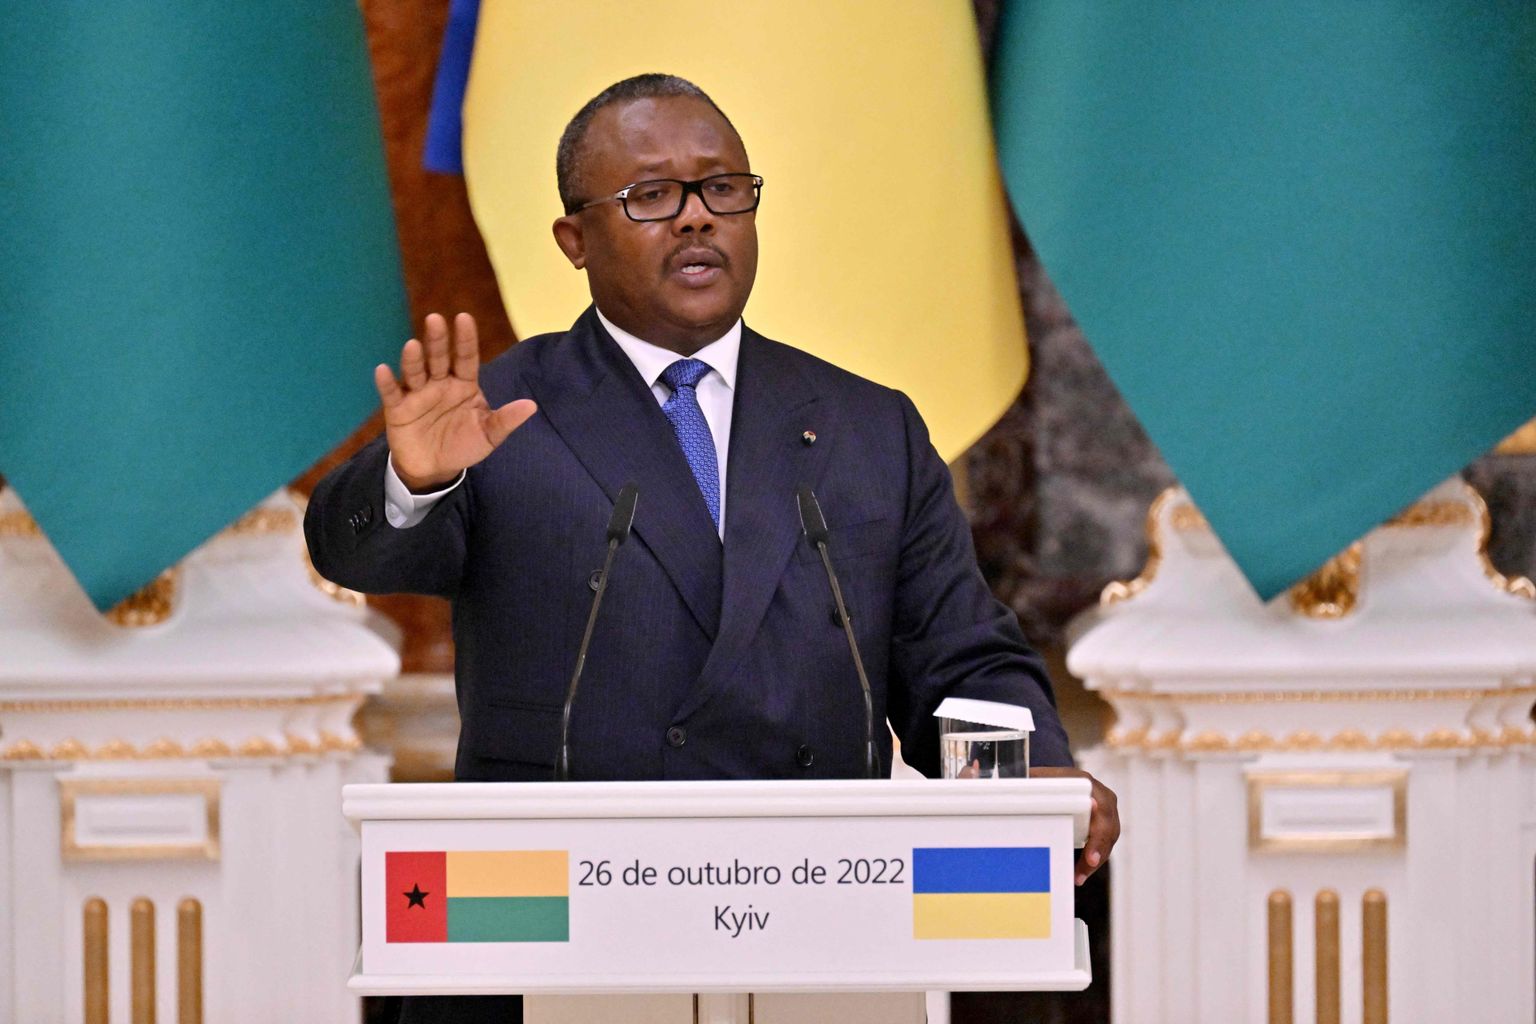 Президент Гвинеи-Бисау Умаро Сиссоко Эмбало во время пресс-конференции с Владимиром Зеленским в Киеве 26 октября 2022 года.